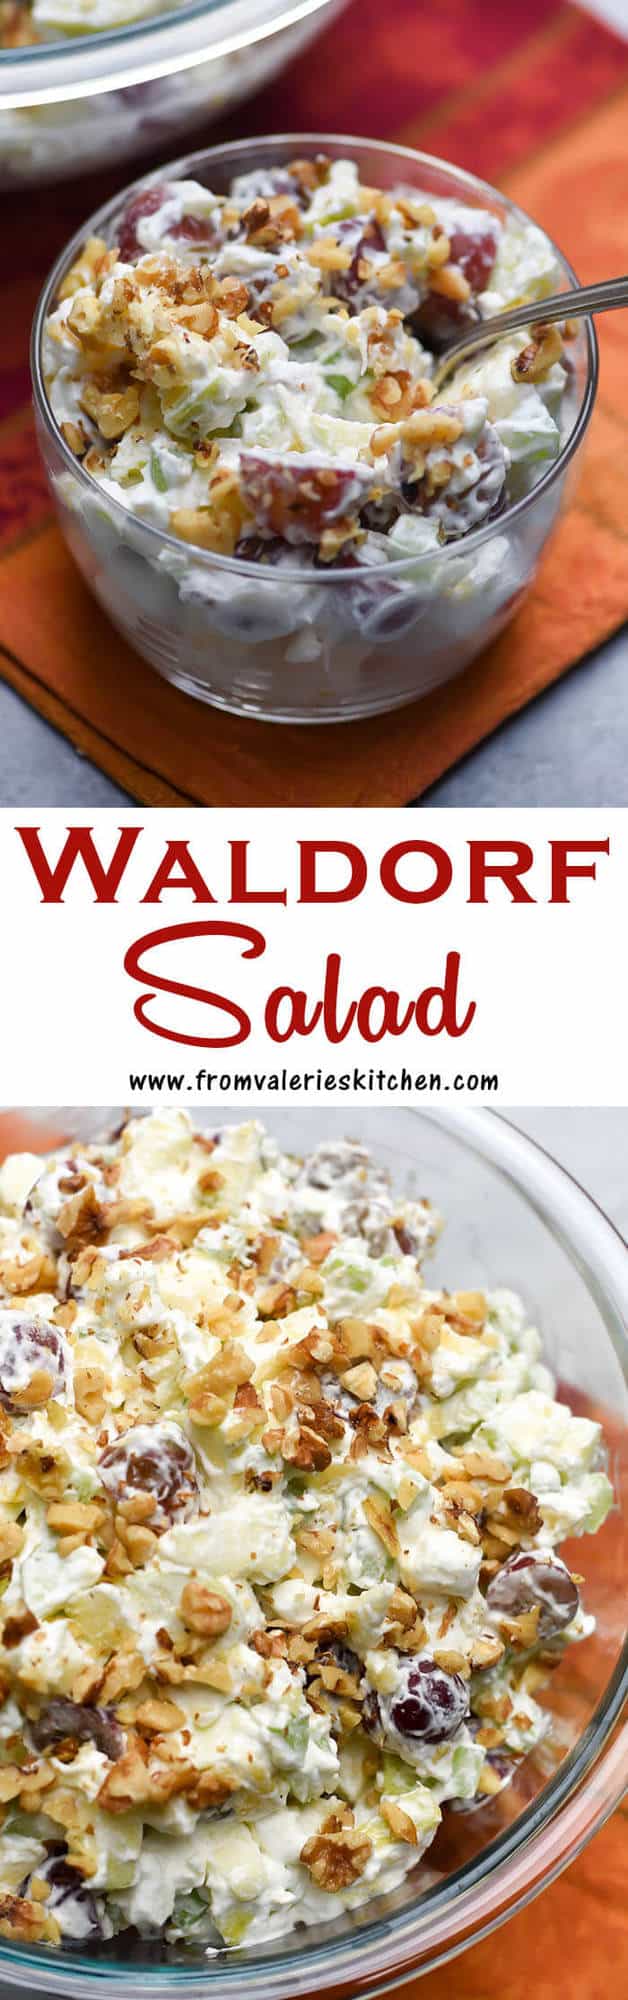  Un collage vertical à deux images de salade Waldorf avec superposition de texte.